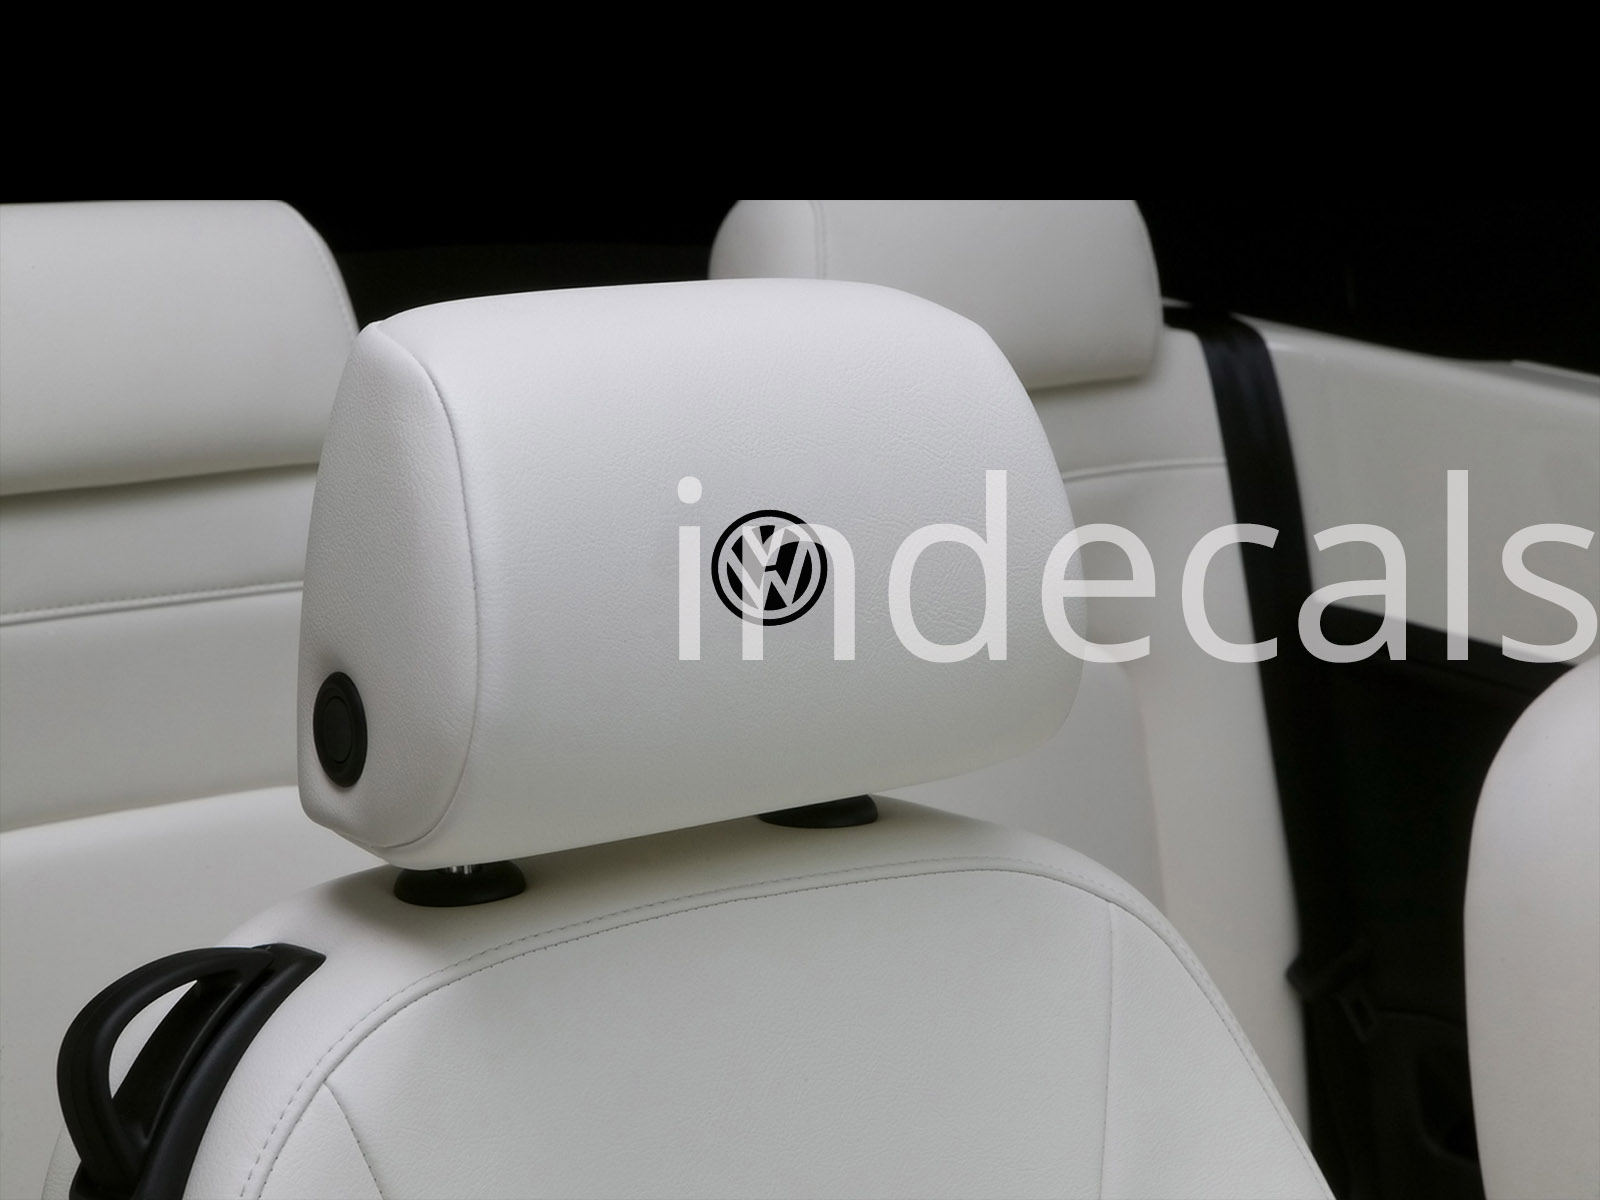 6 x Volkswagen Stickers for Headrests - Black